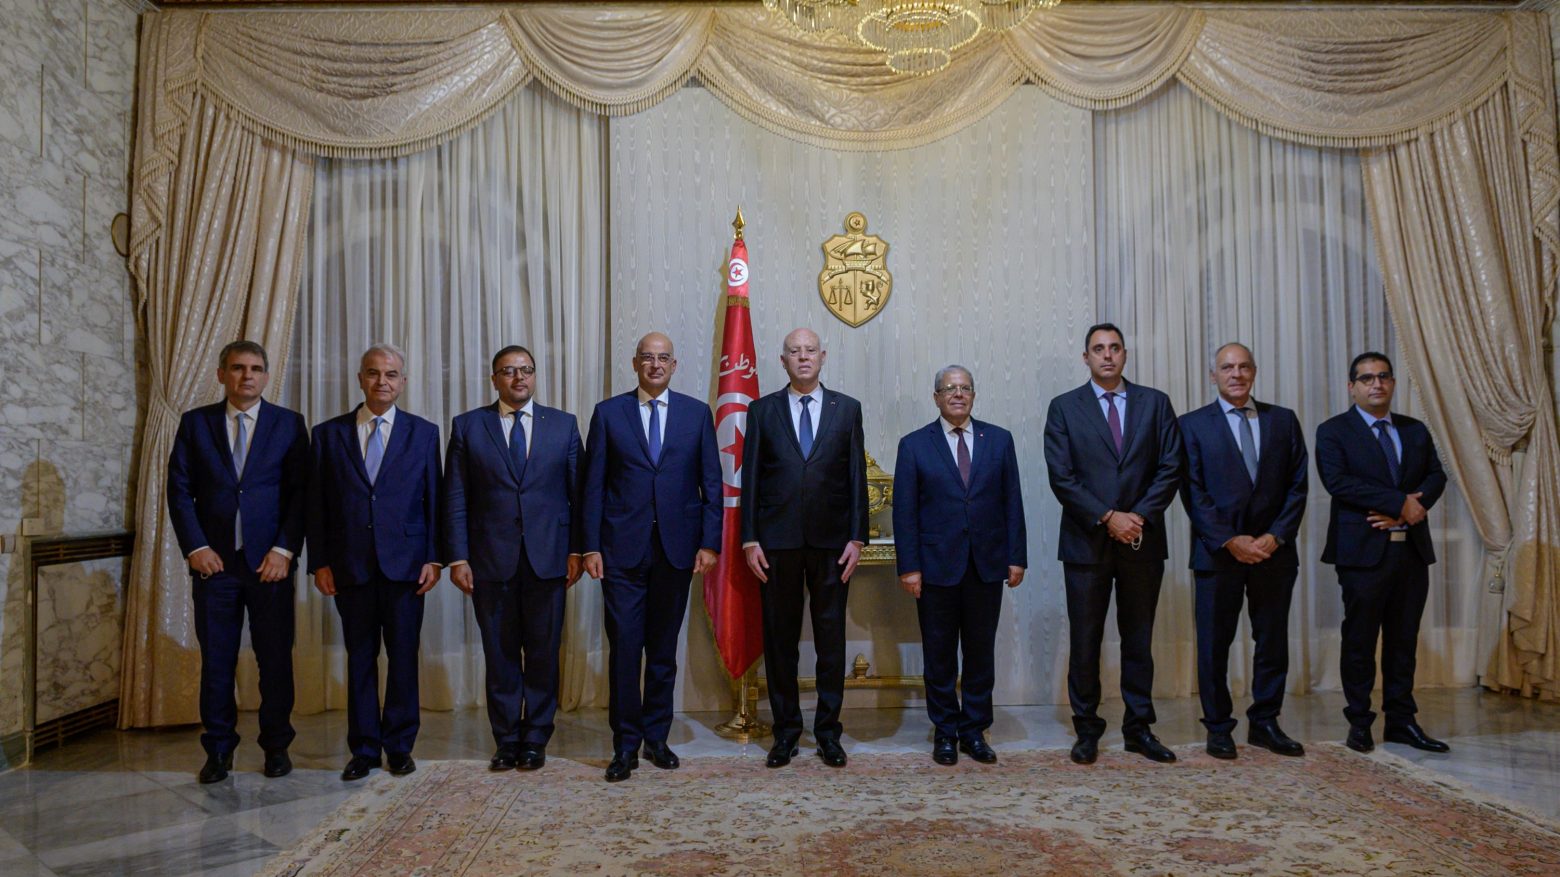 Δένδιας - Σε αντίθεση με άλλες χώρες δεν έχουμε κρυφή ατζέντα στις σχέσεις μας με την Τυνησία